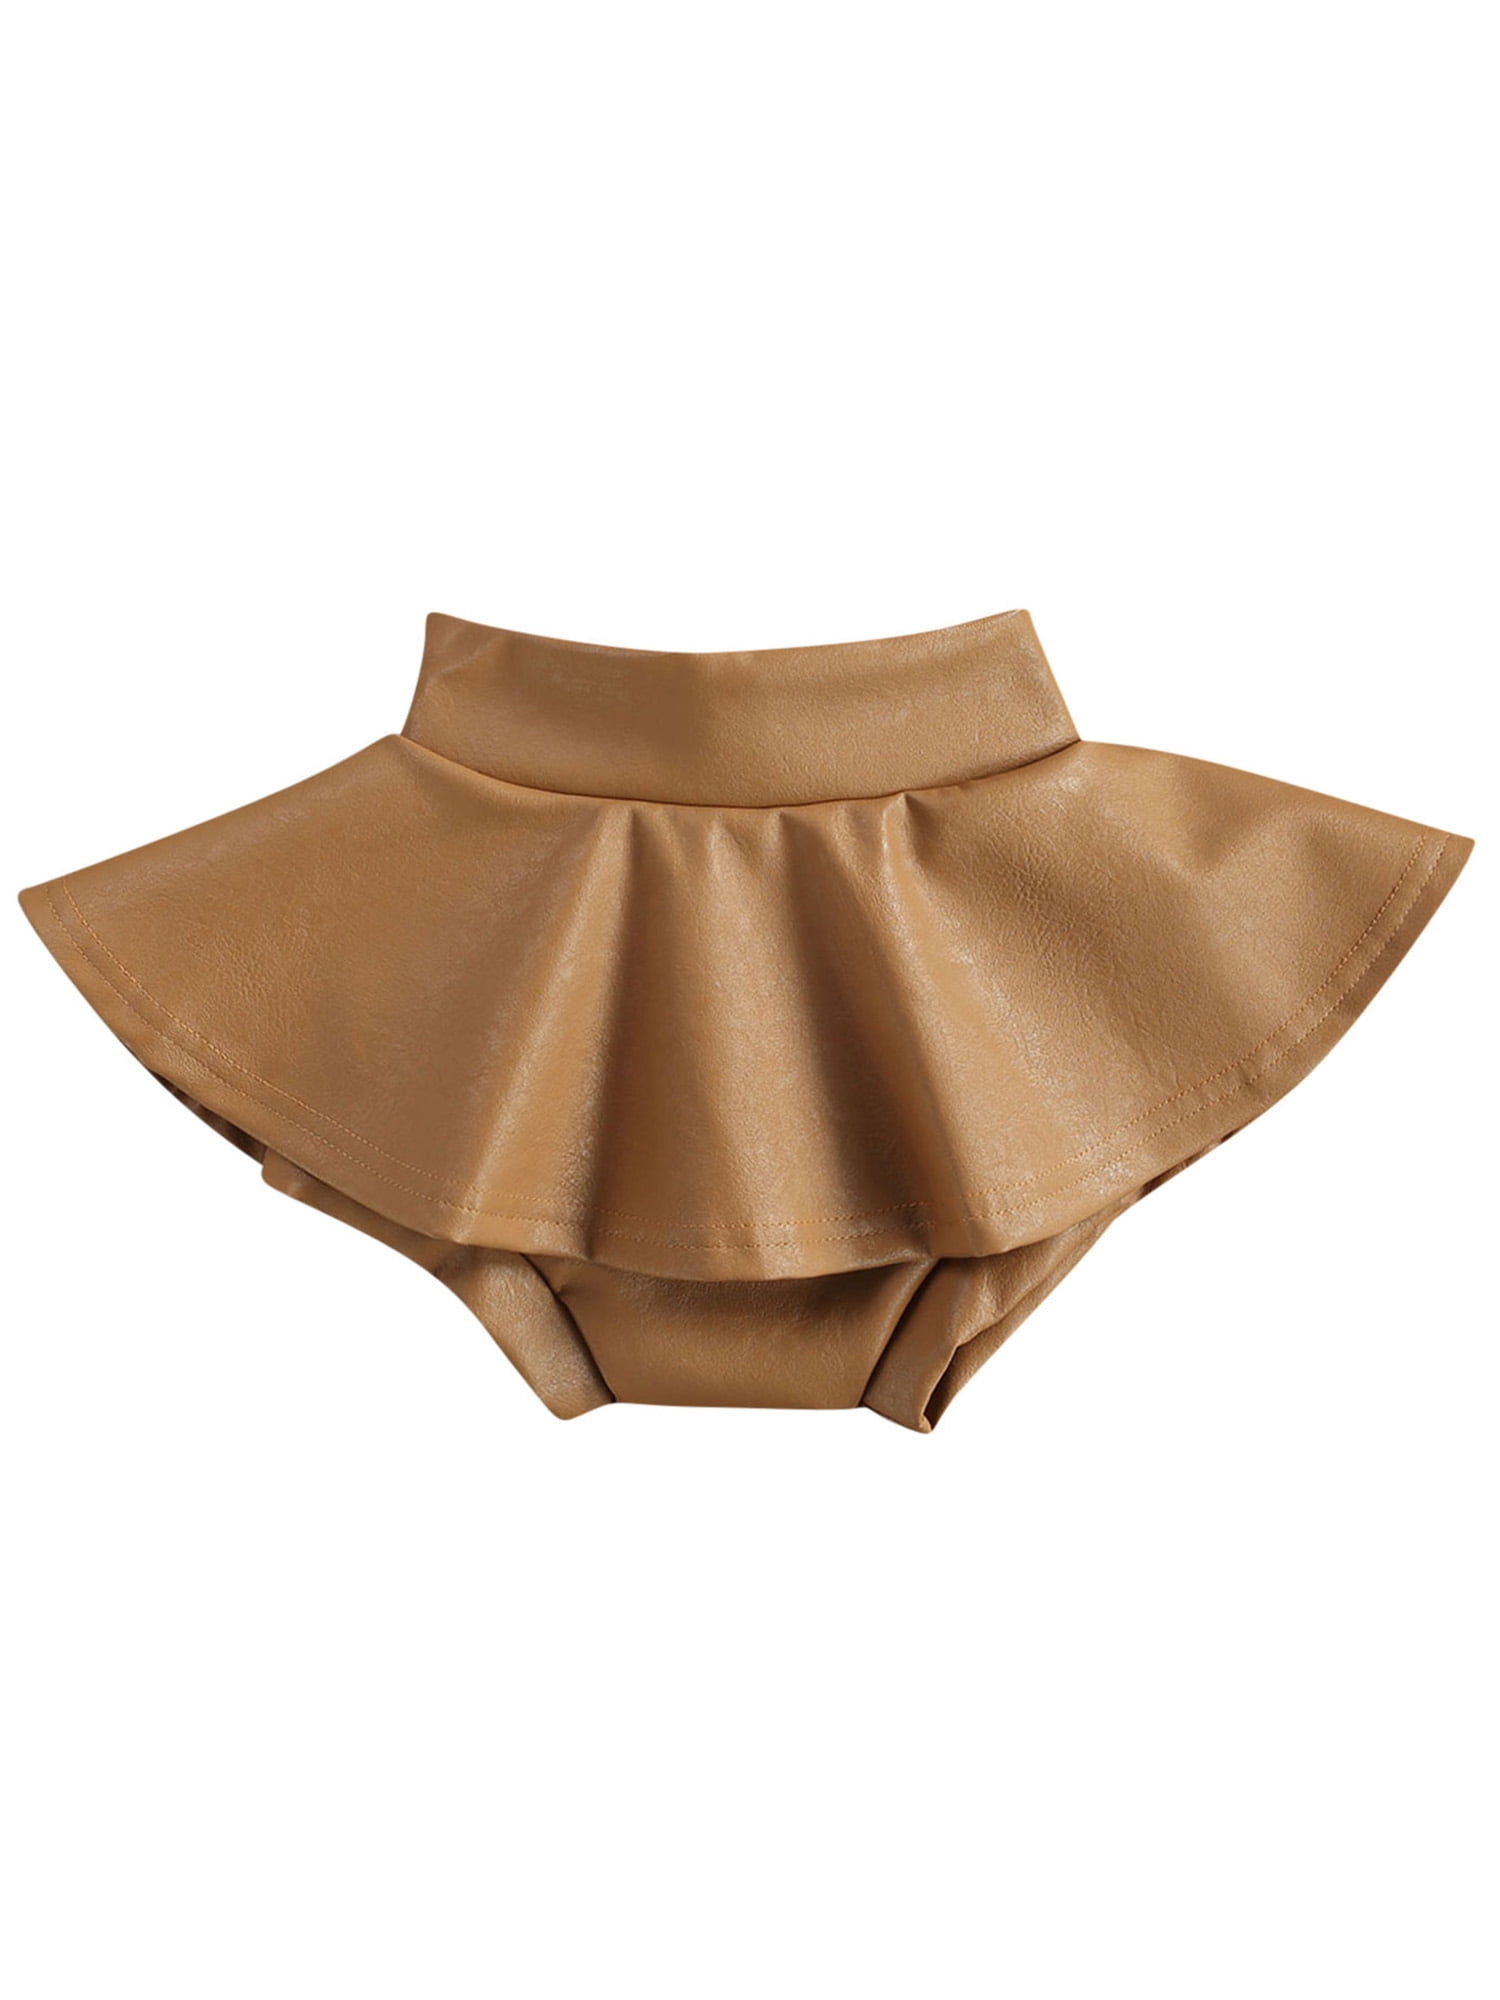 Baby Girls Infant Ruffled Bloomer PP Pants Skirt Diaper Cover Culotte Pant Skirt 